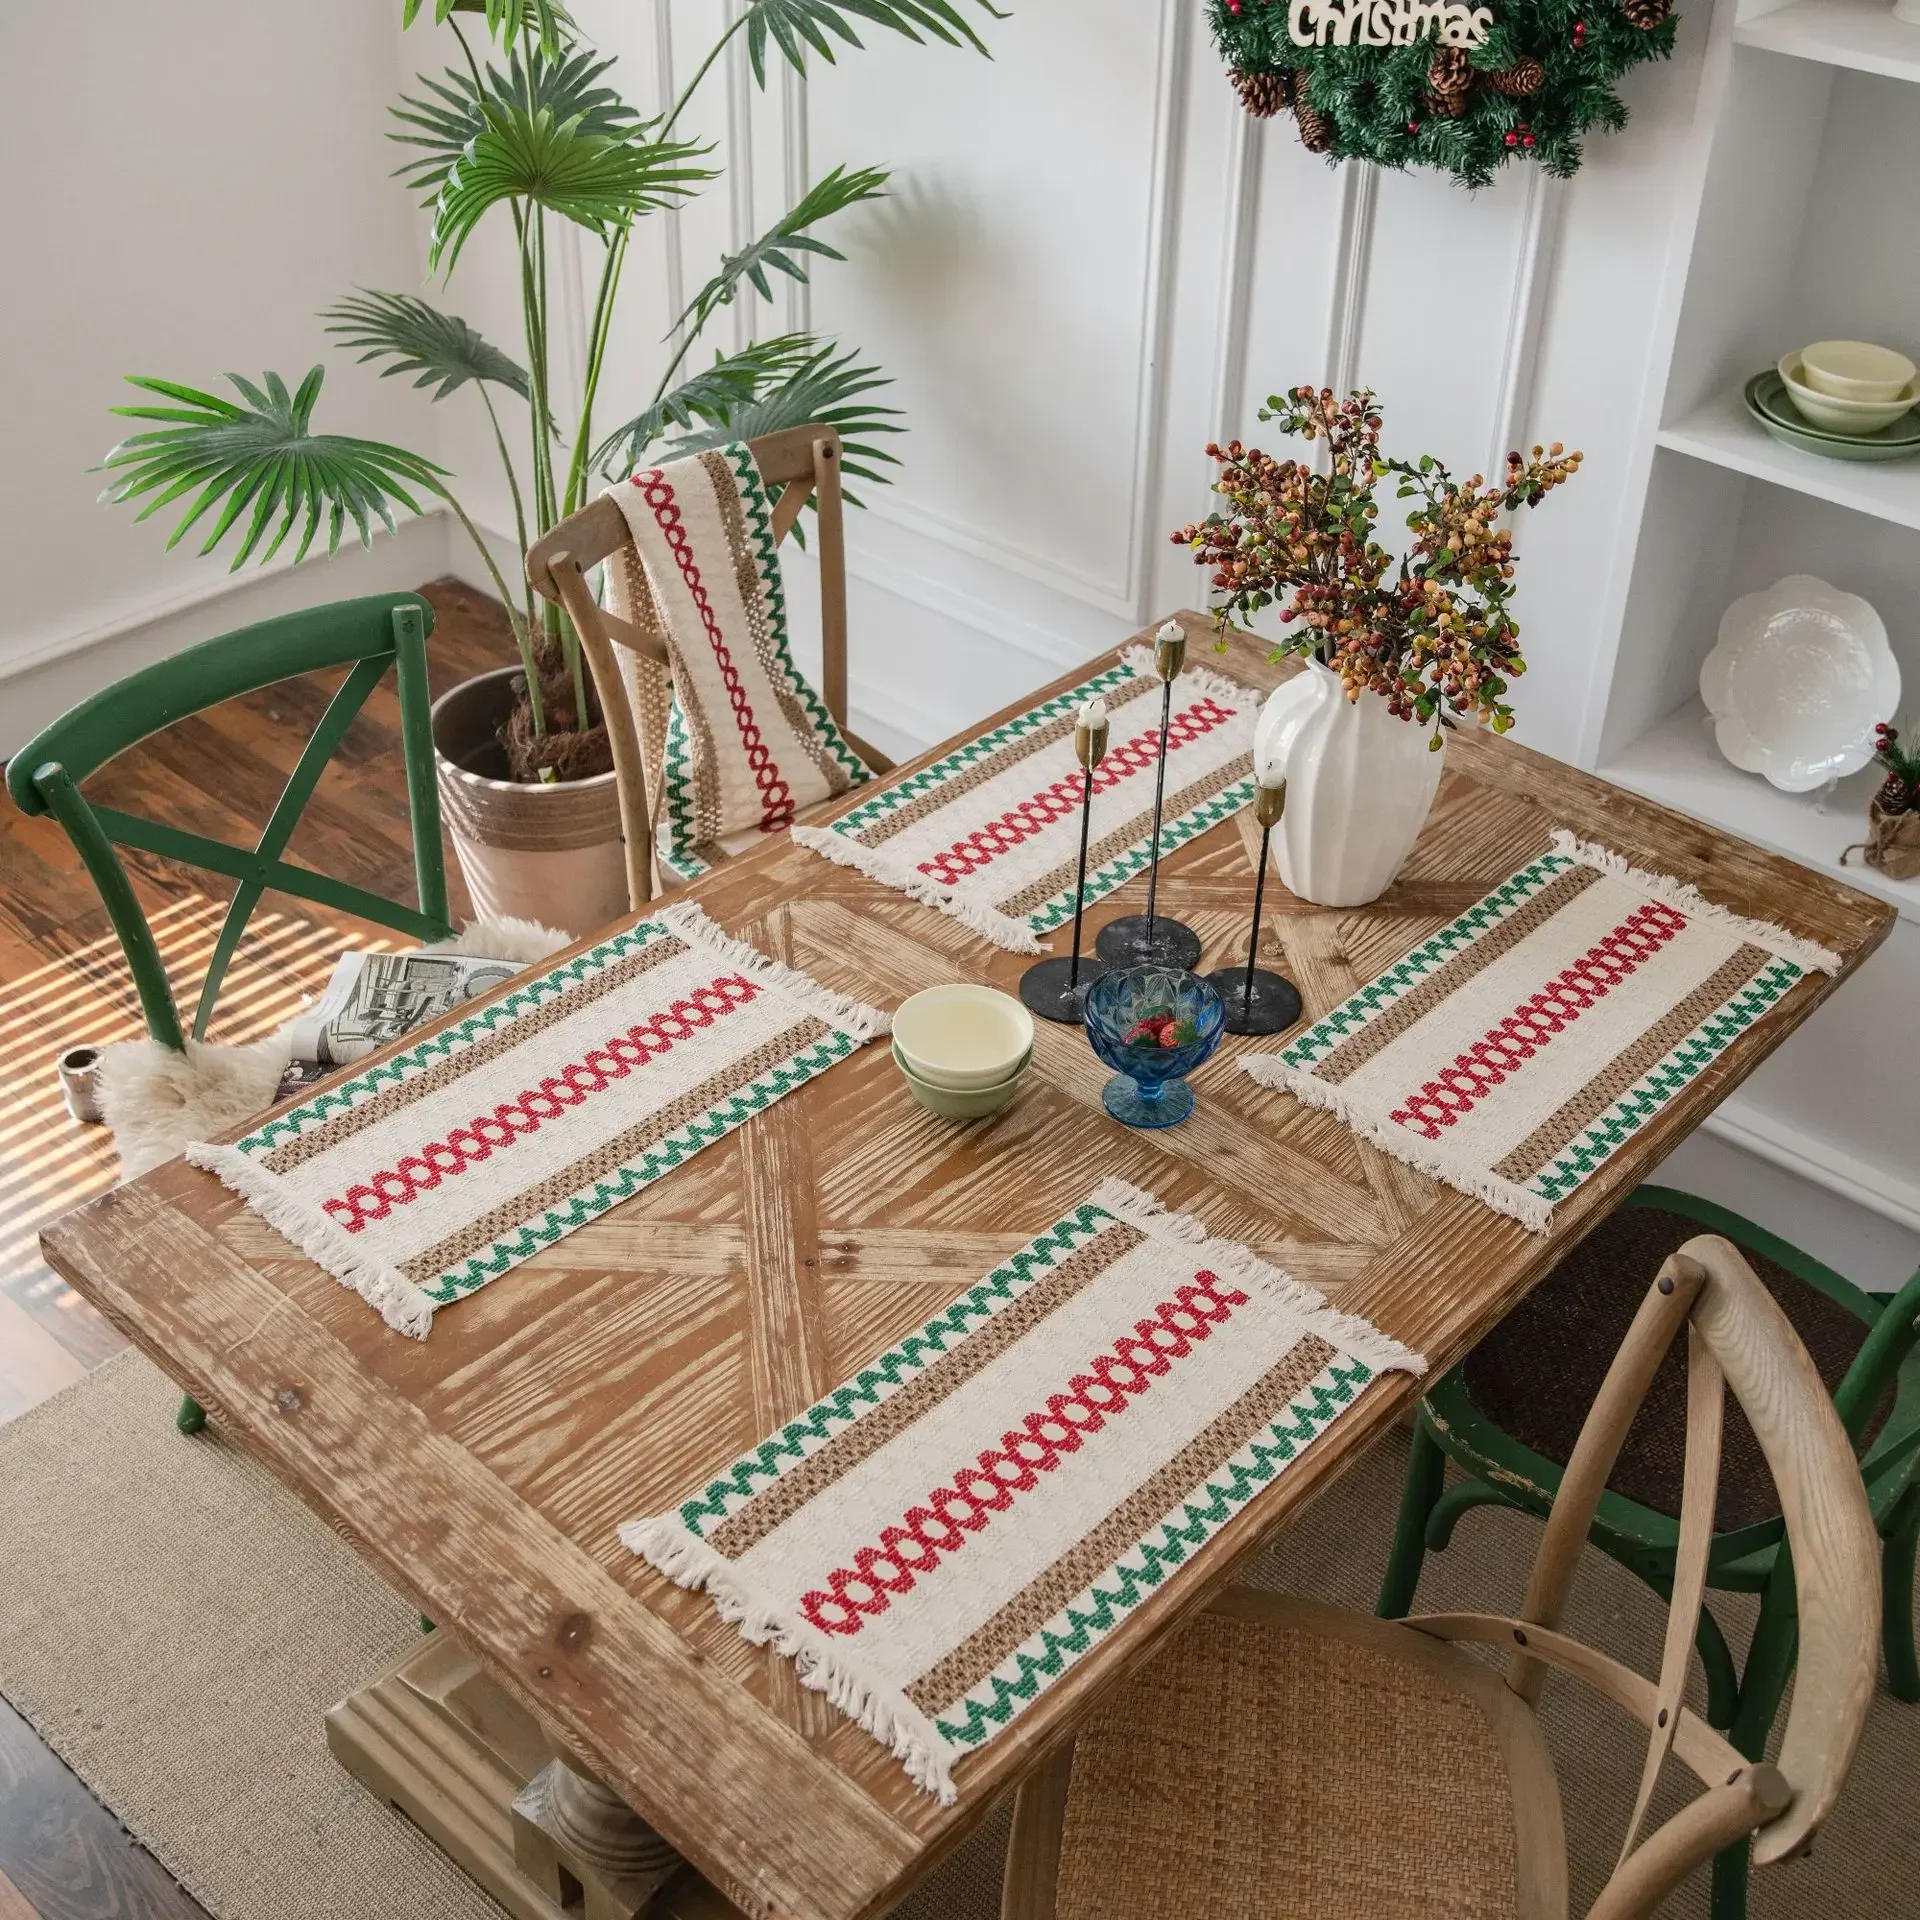 

Хлопковые плетеные столовые приборы ручной работы в стиле бохо, современные столовые приборы в фермерском стиле с бахромой для обеденного стола, плетеные джутовые салфетки, кухонные принадлежности